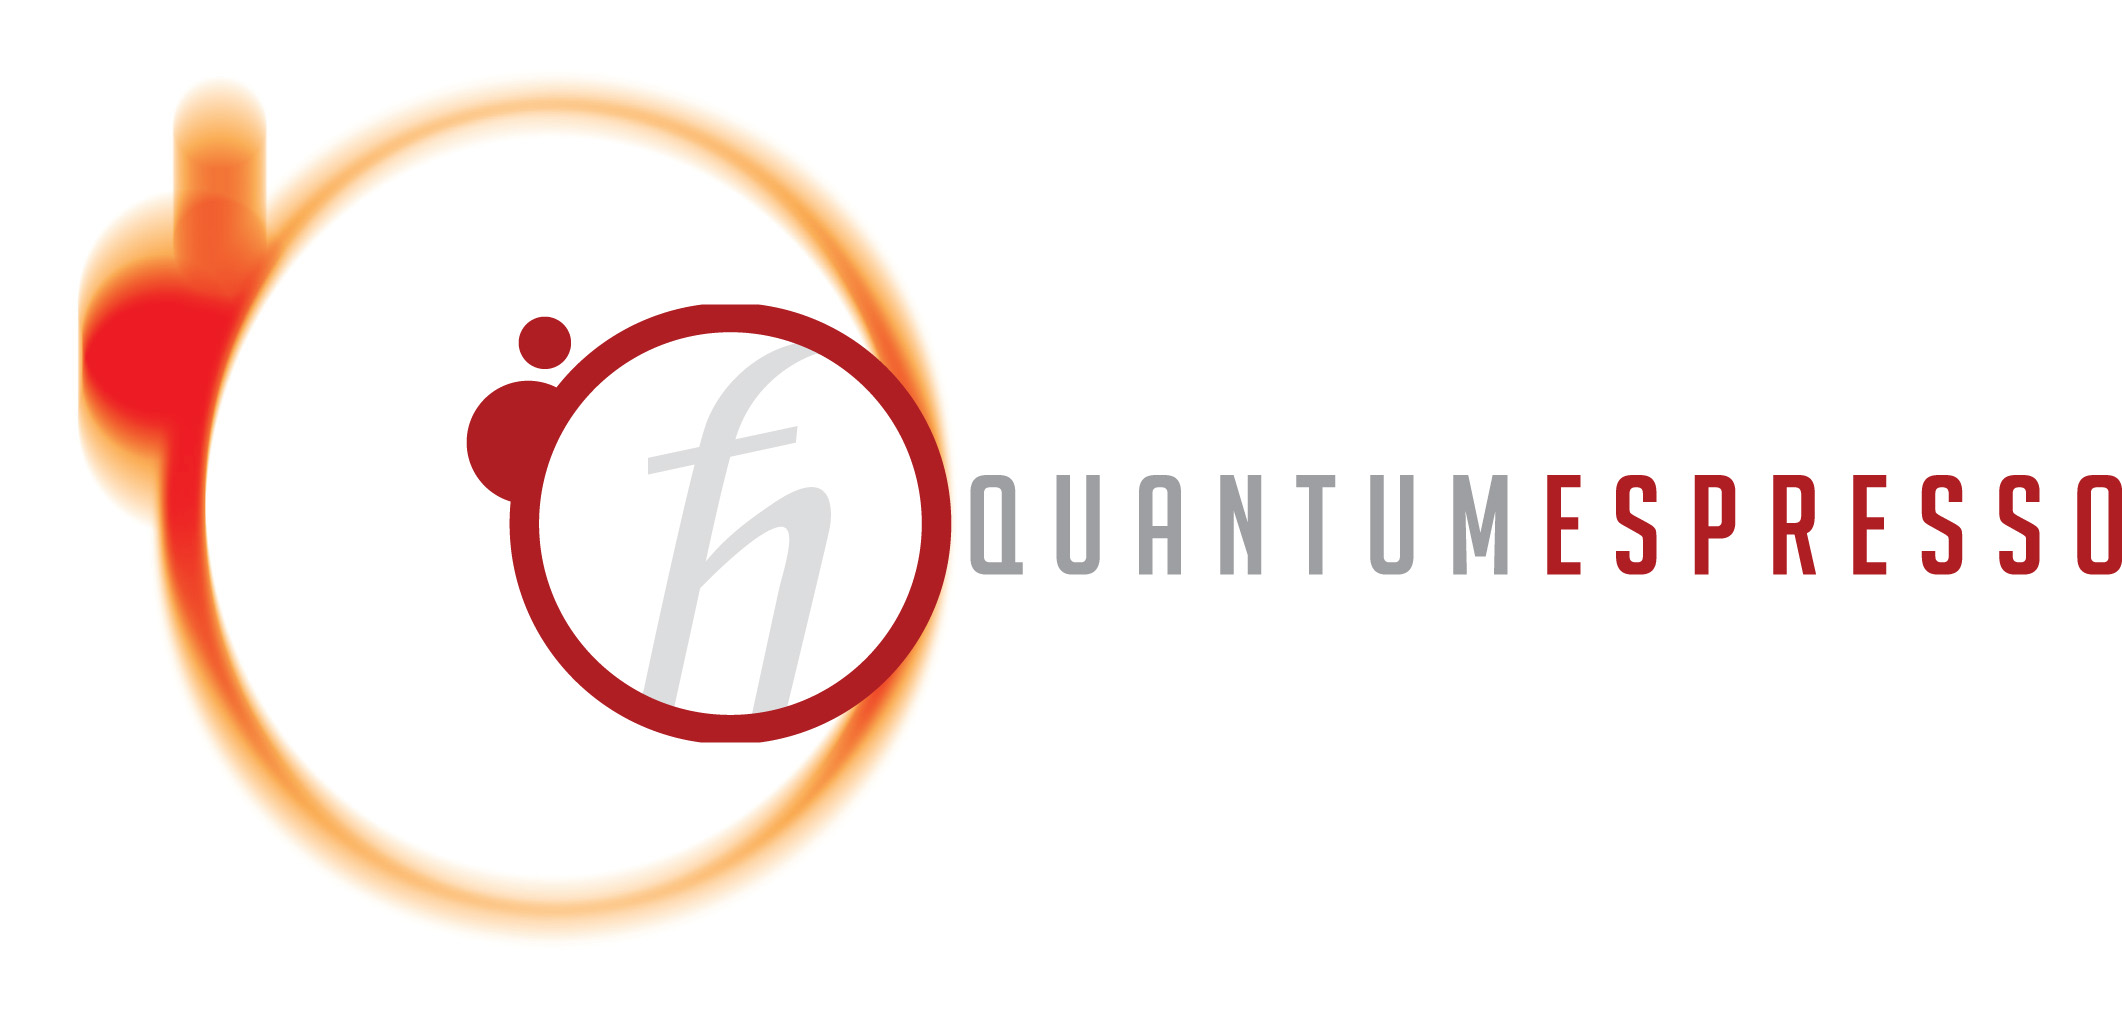 Quantum_espresso_logo.jpg